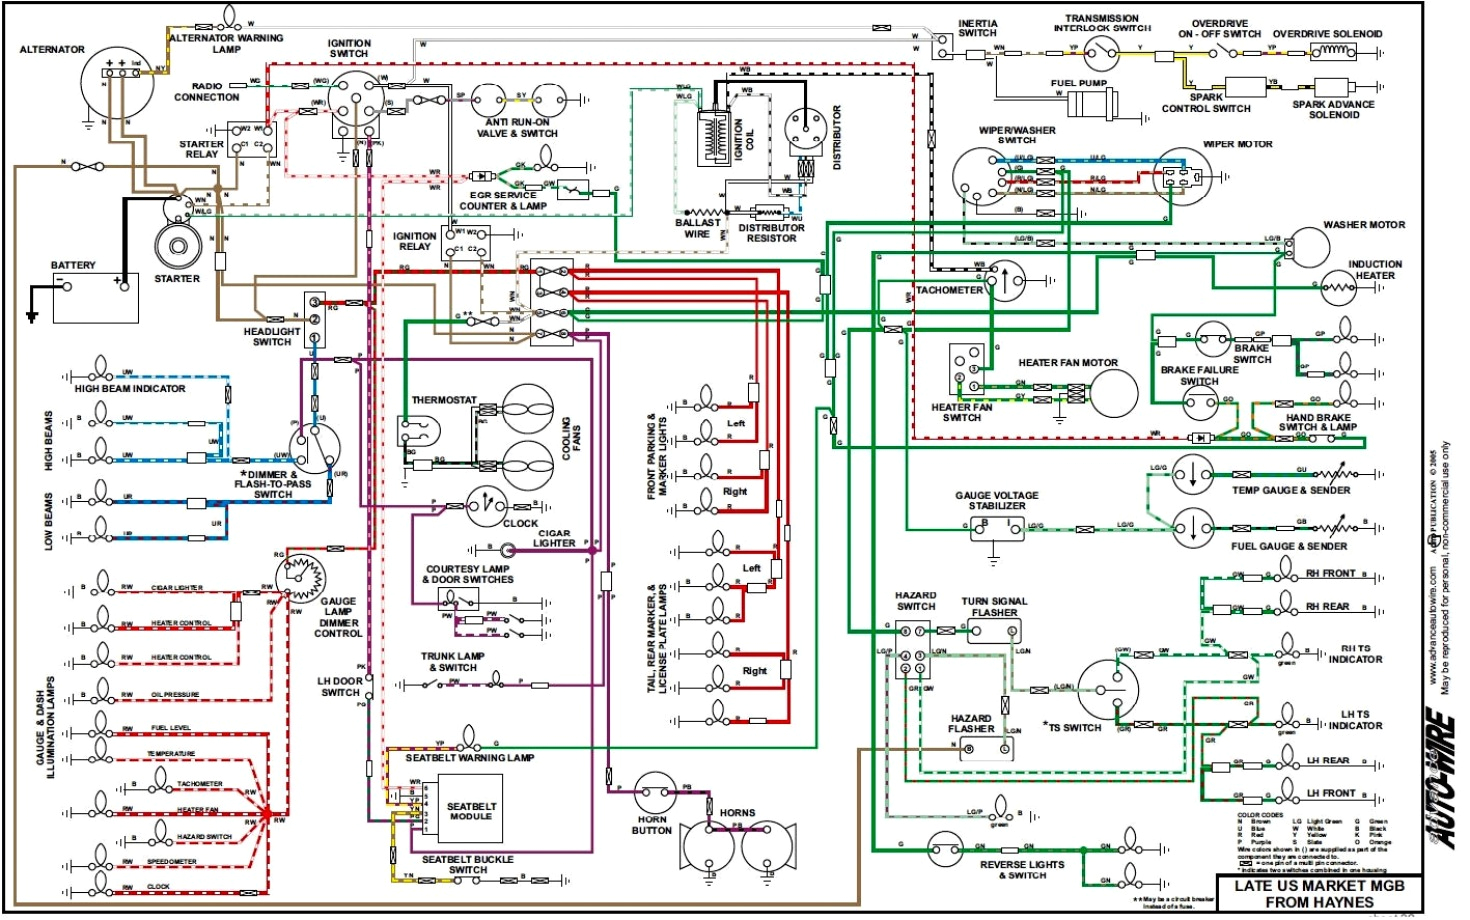 1976 mgb wiring diagram od wiring diagram load 1976 mgb wiring diagram od